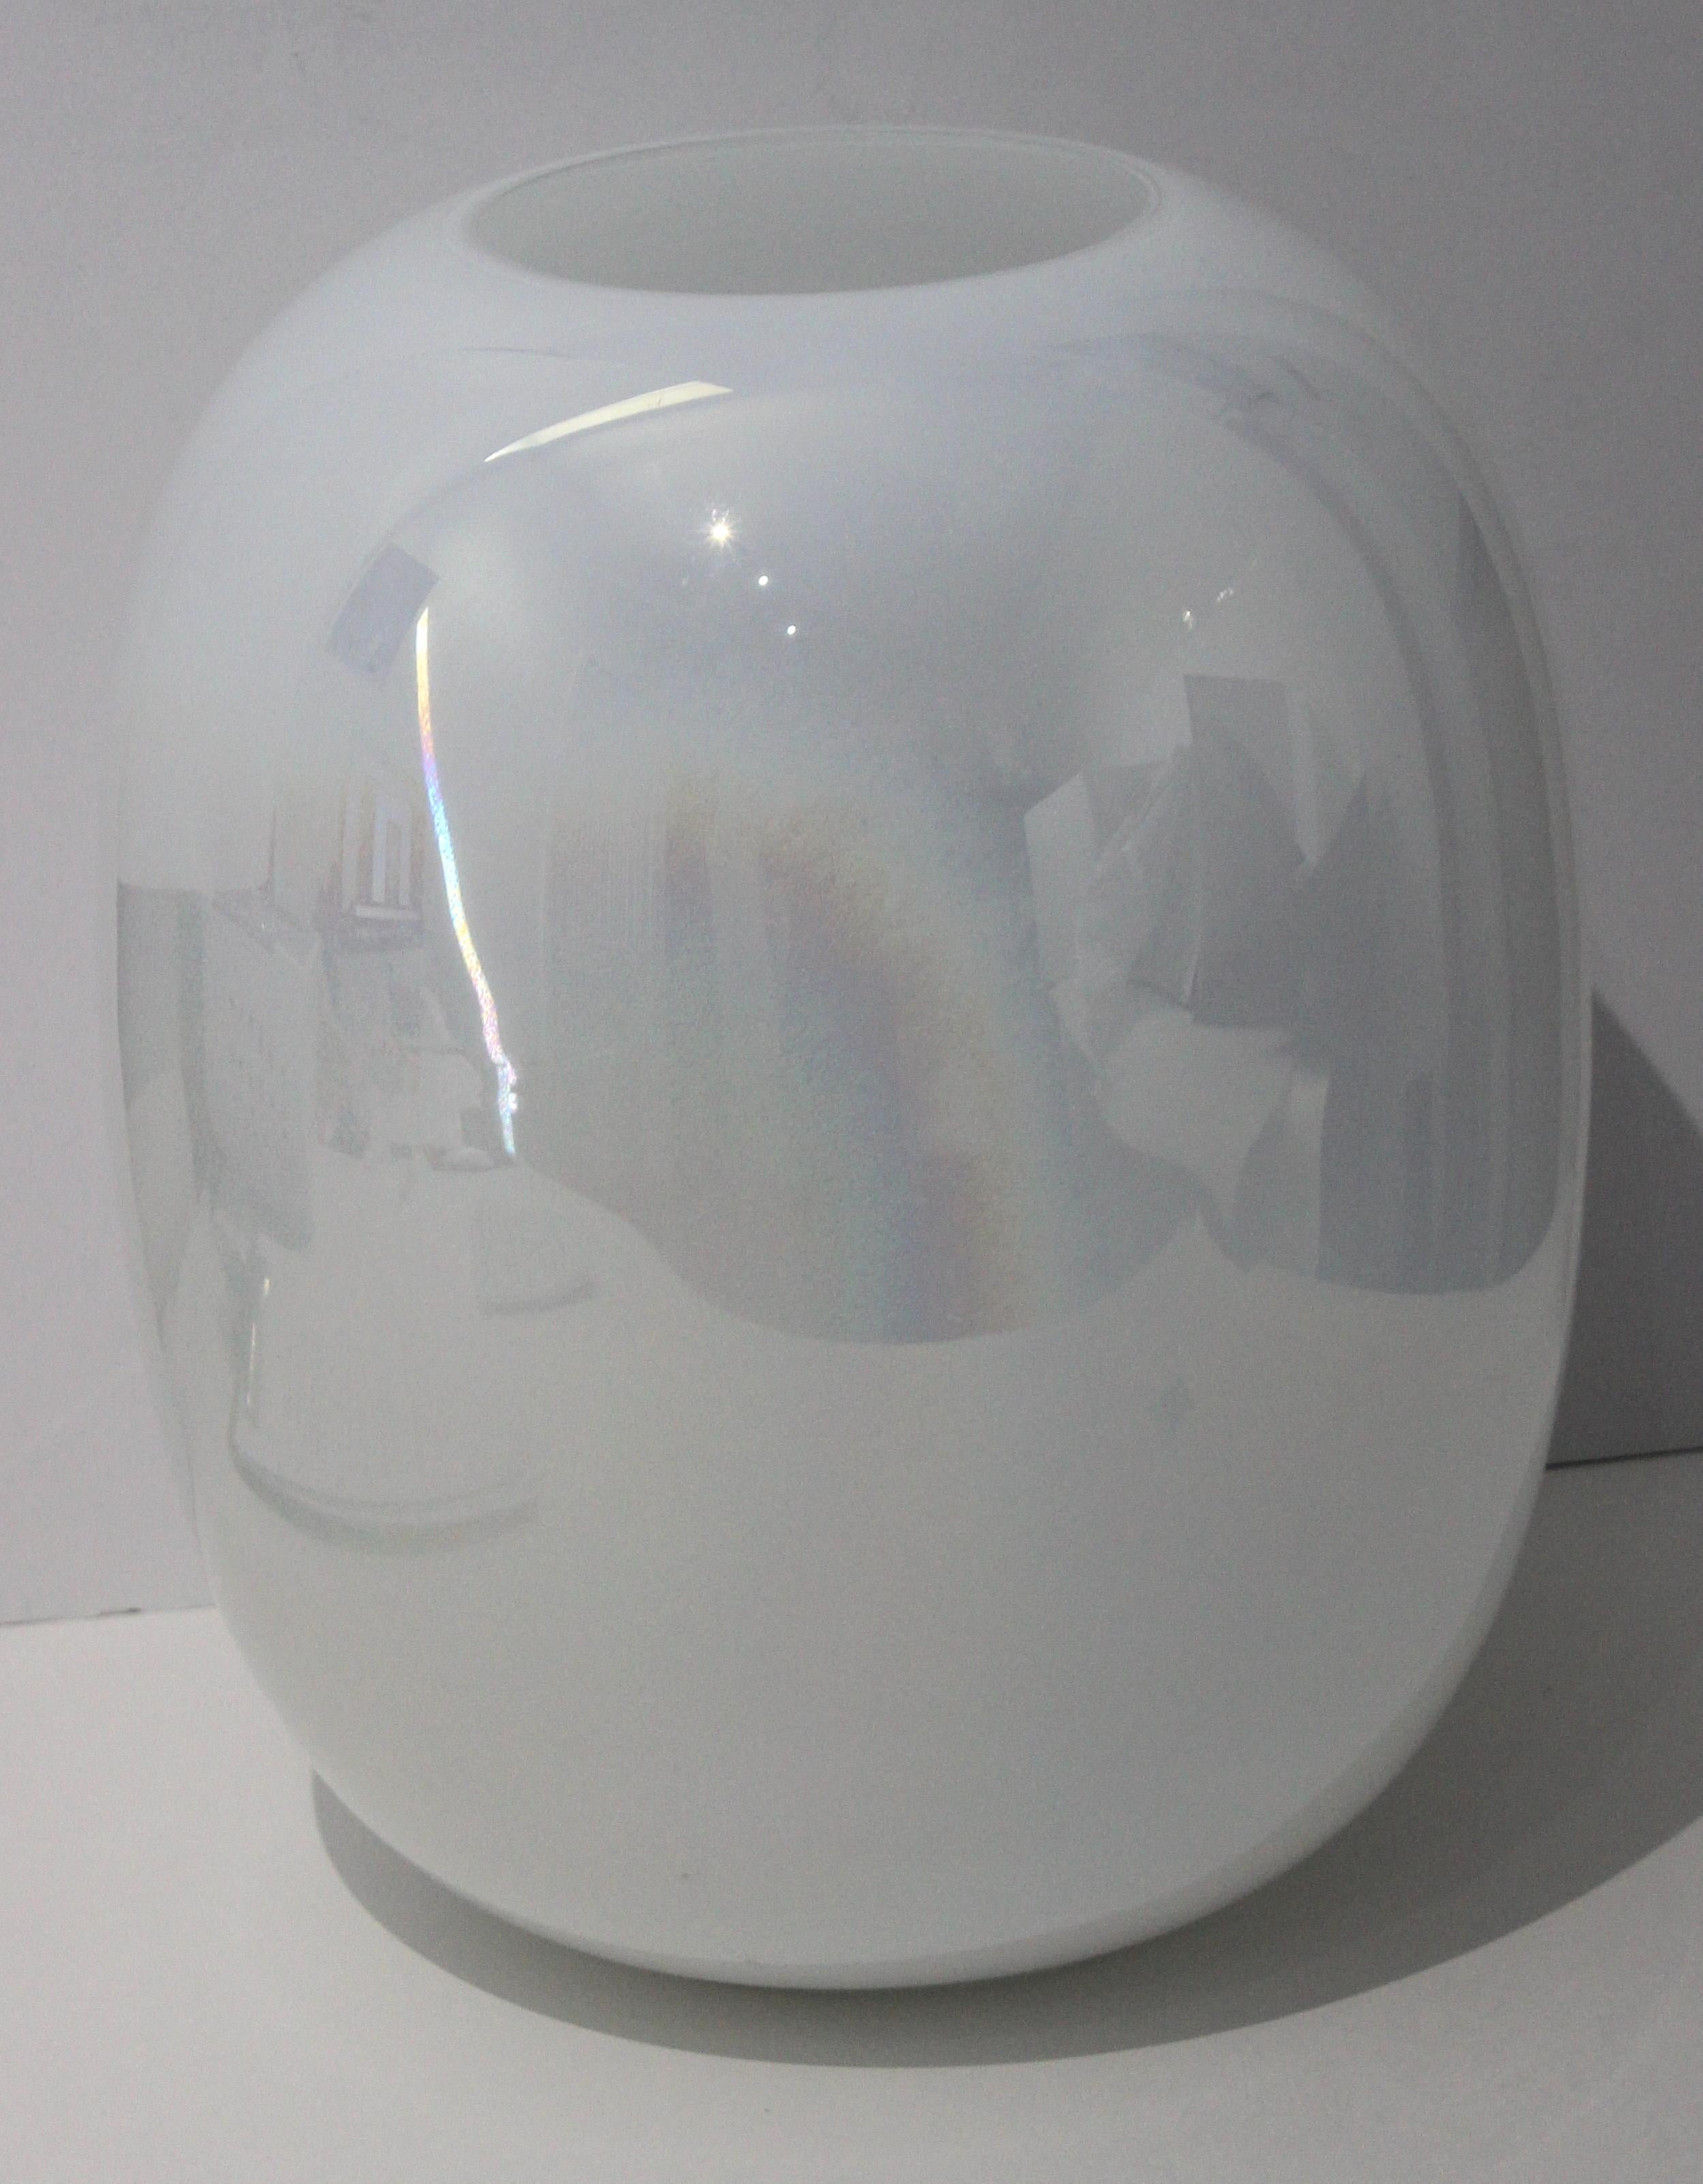 Vintage vase en verre blanc opalin de Murano provenant d'une succession de Palm Beach

Ce vase fait partie d'une étonnante collection de vases et de boîtes en verre blanc de Murano - de différentes formes et tailles ainsi que de textures et de